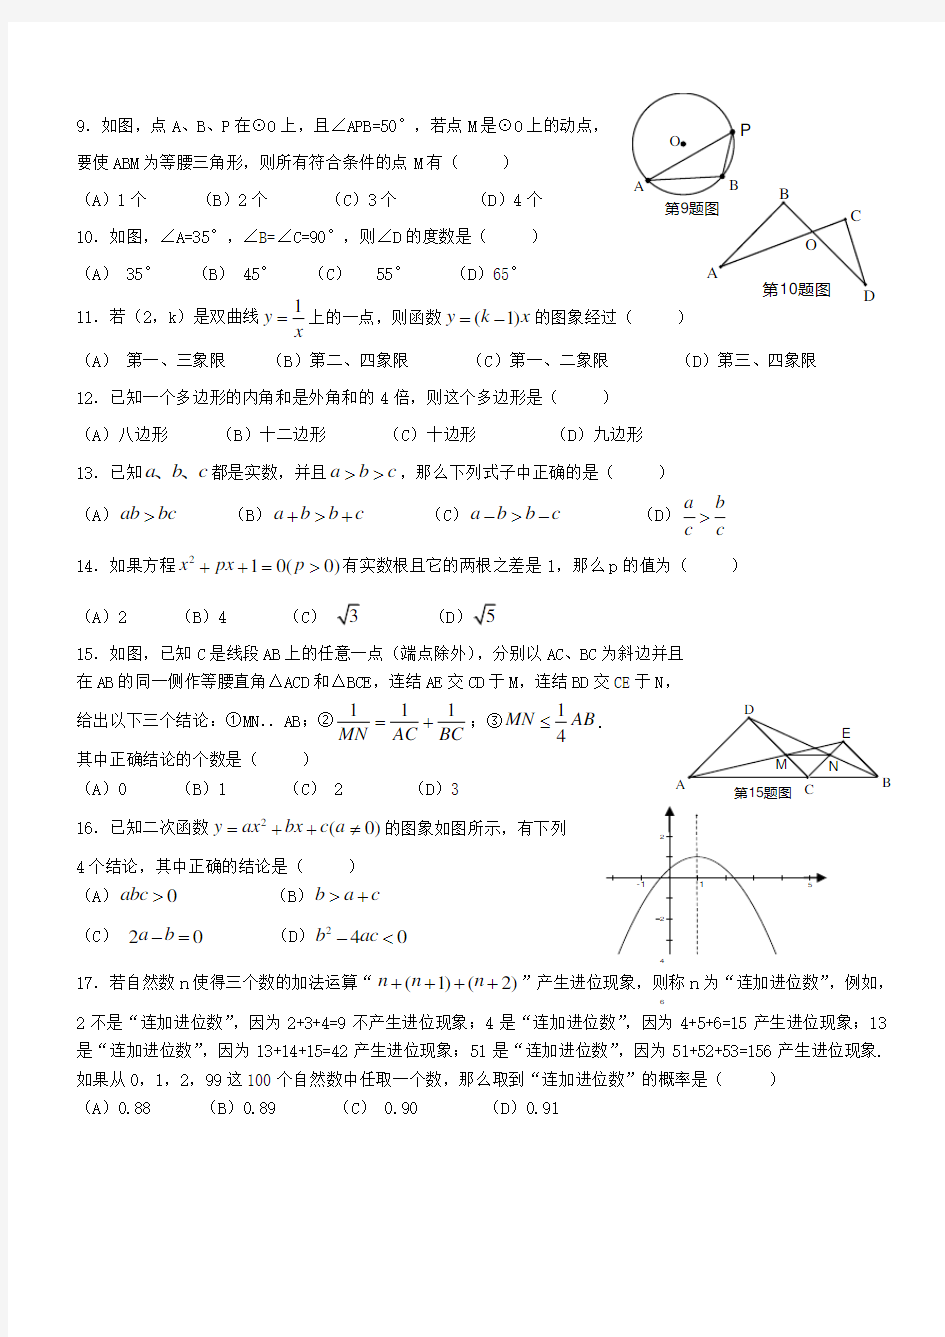 2011年广东省初中数学竞赛初赛试题